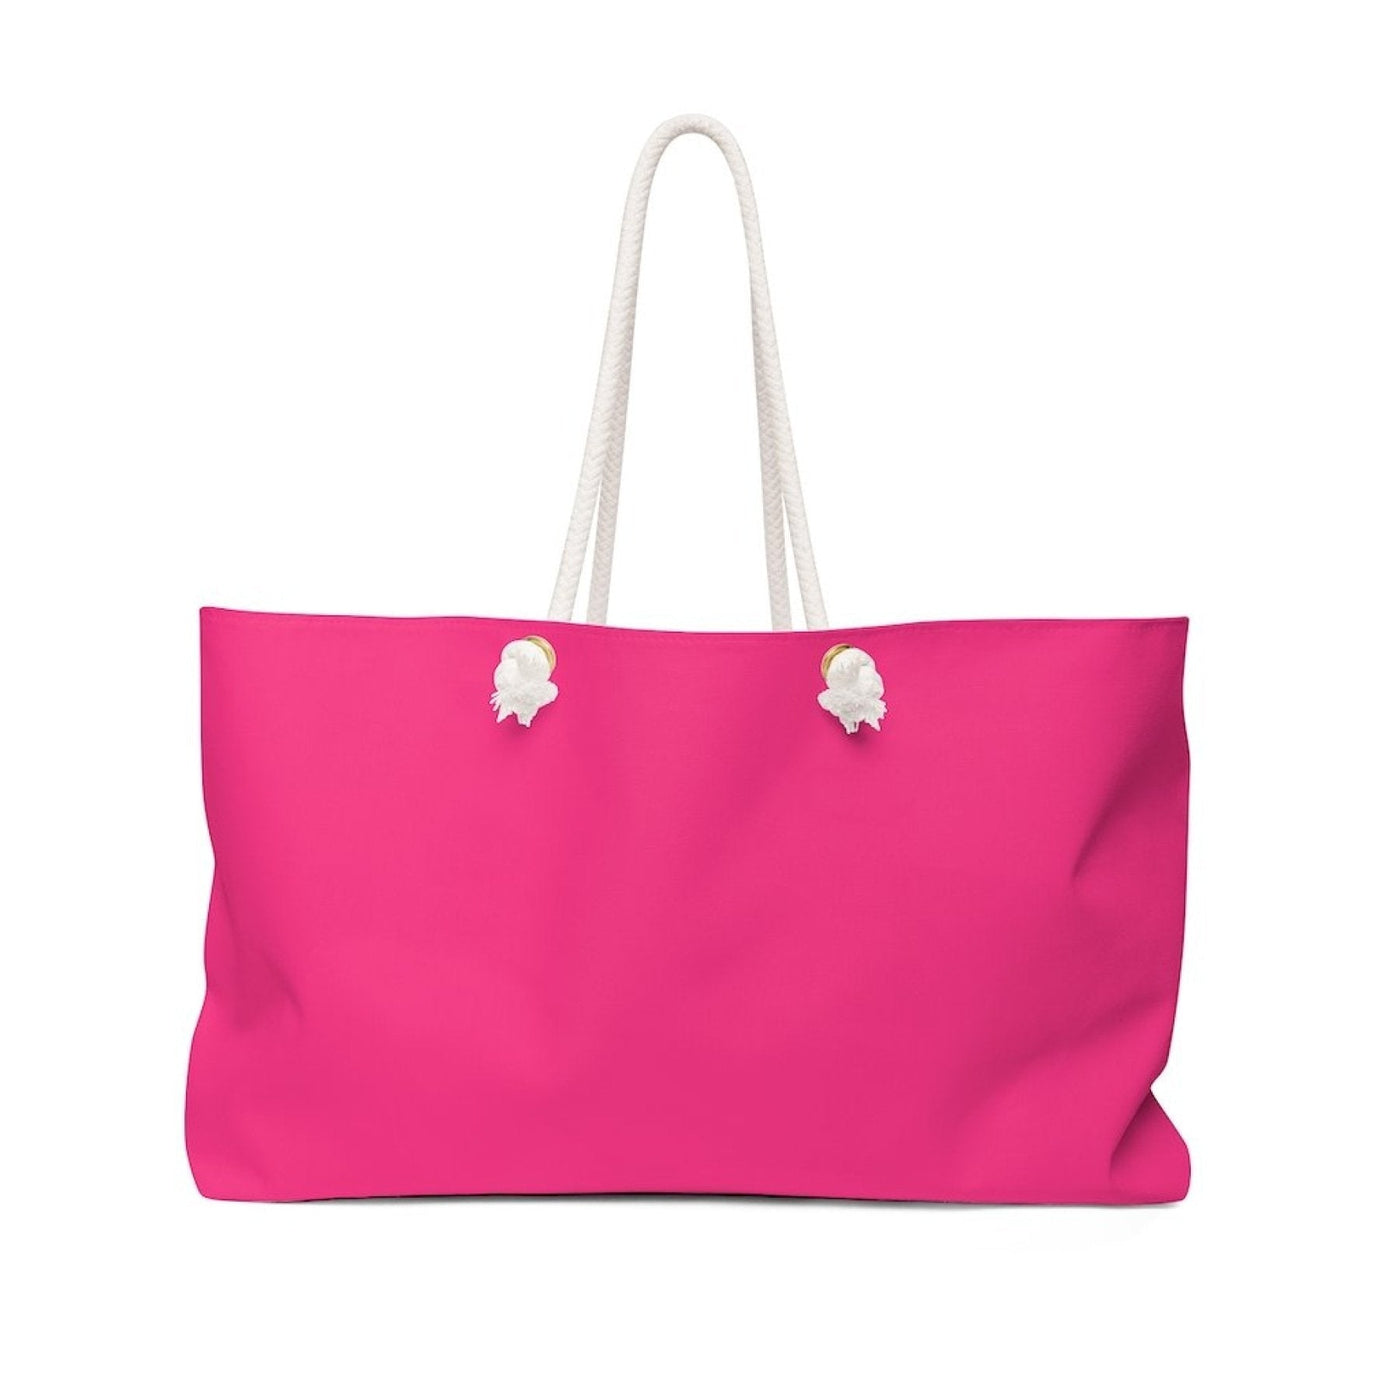 Weekender Tote Bag Pink - Bags | Tote Bags | Weekender